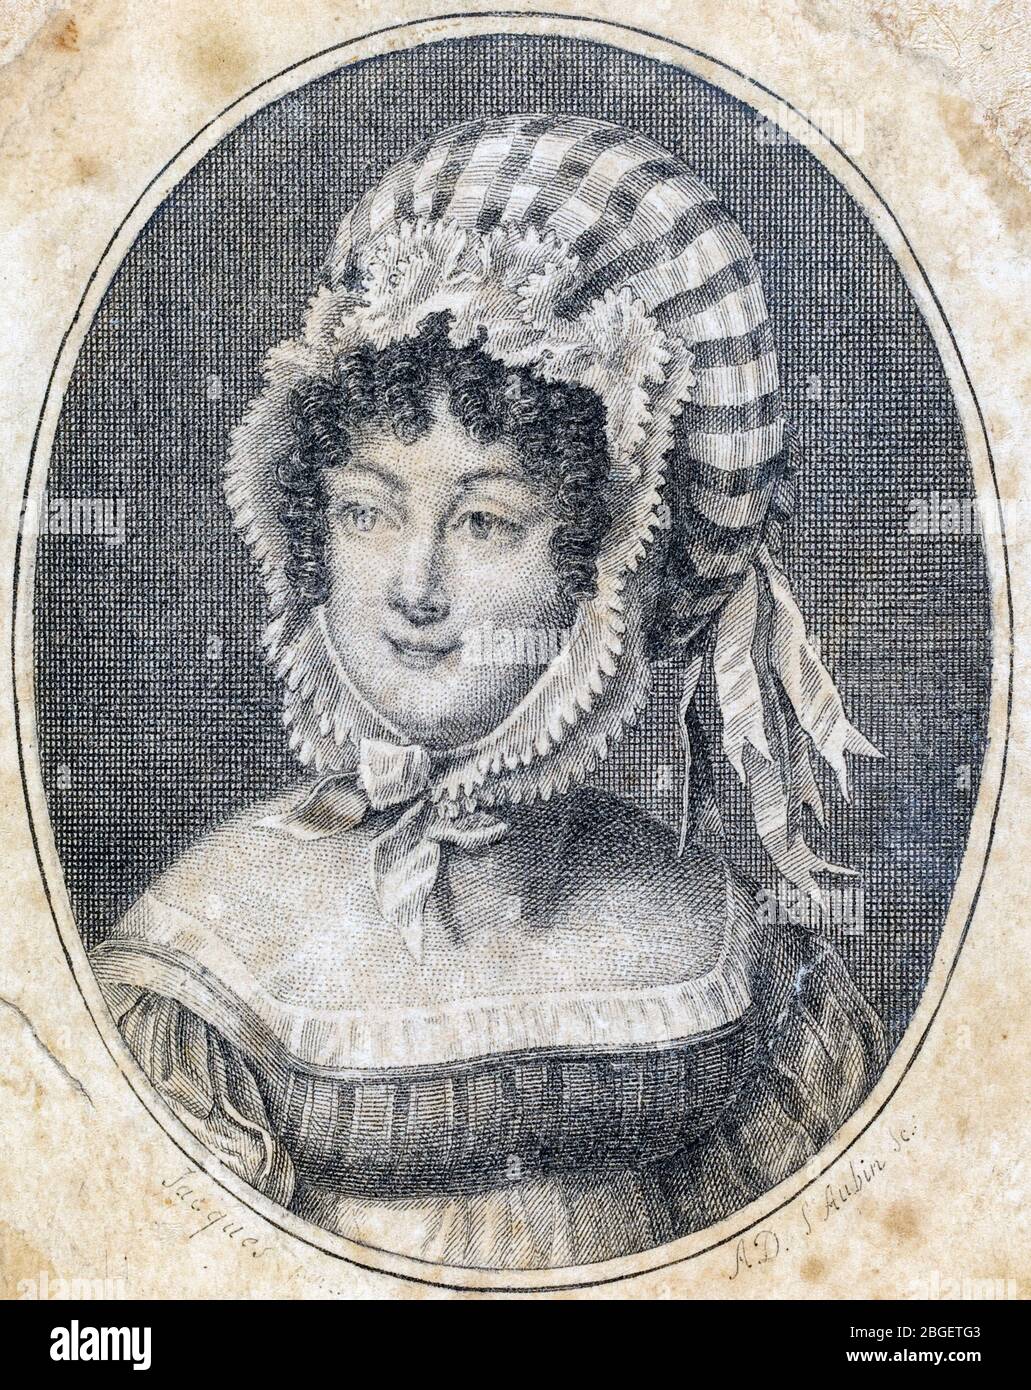 Tête d'une femme portant un capot à rayures, gravure de Saint-Aubin (français, 1736-1807) Banque D'Images